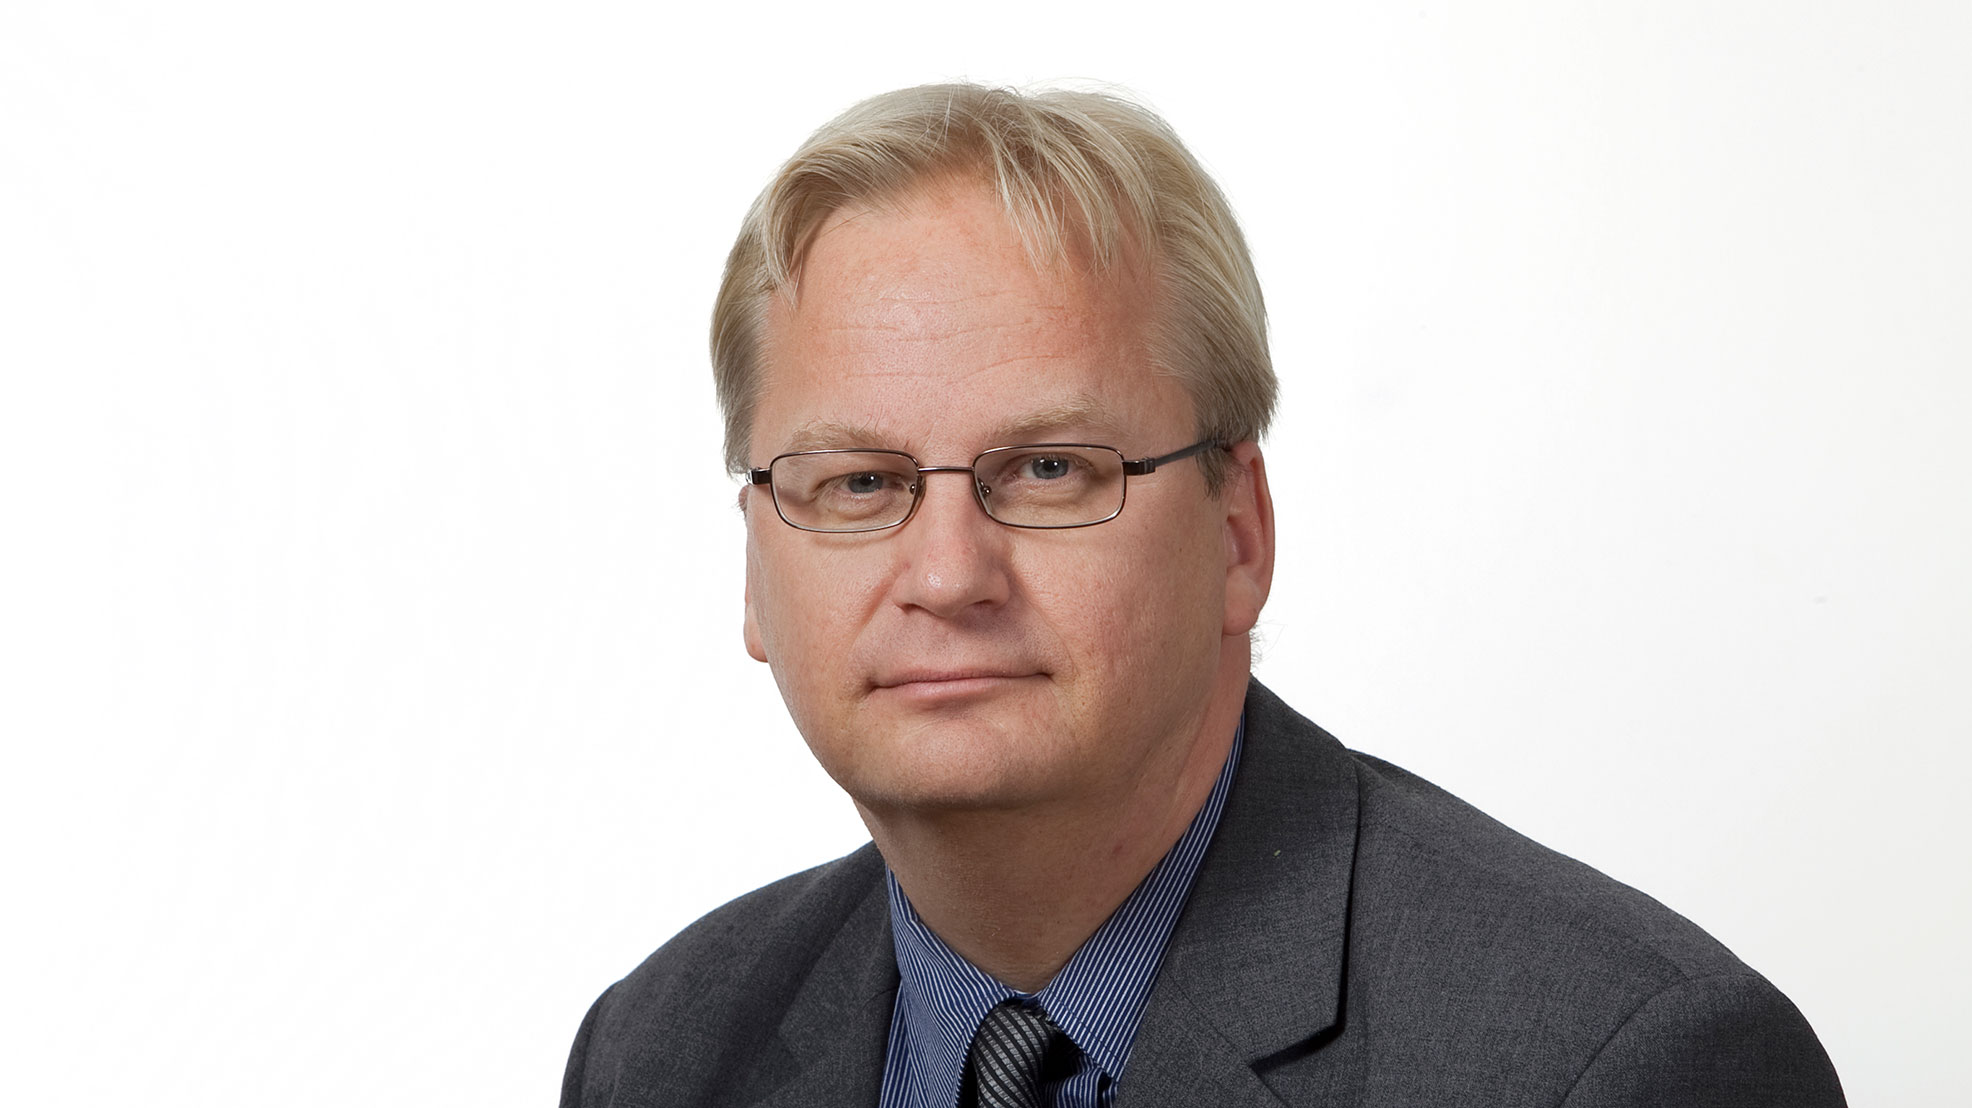 SAK:n päälakimies Timo Koskinen. Kuva: Patrik Lindström